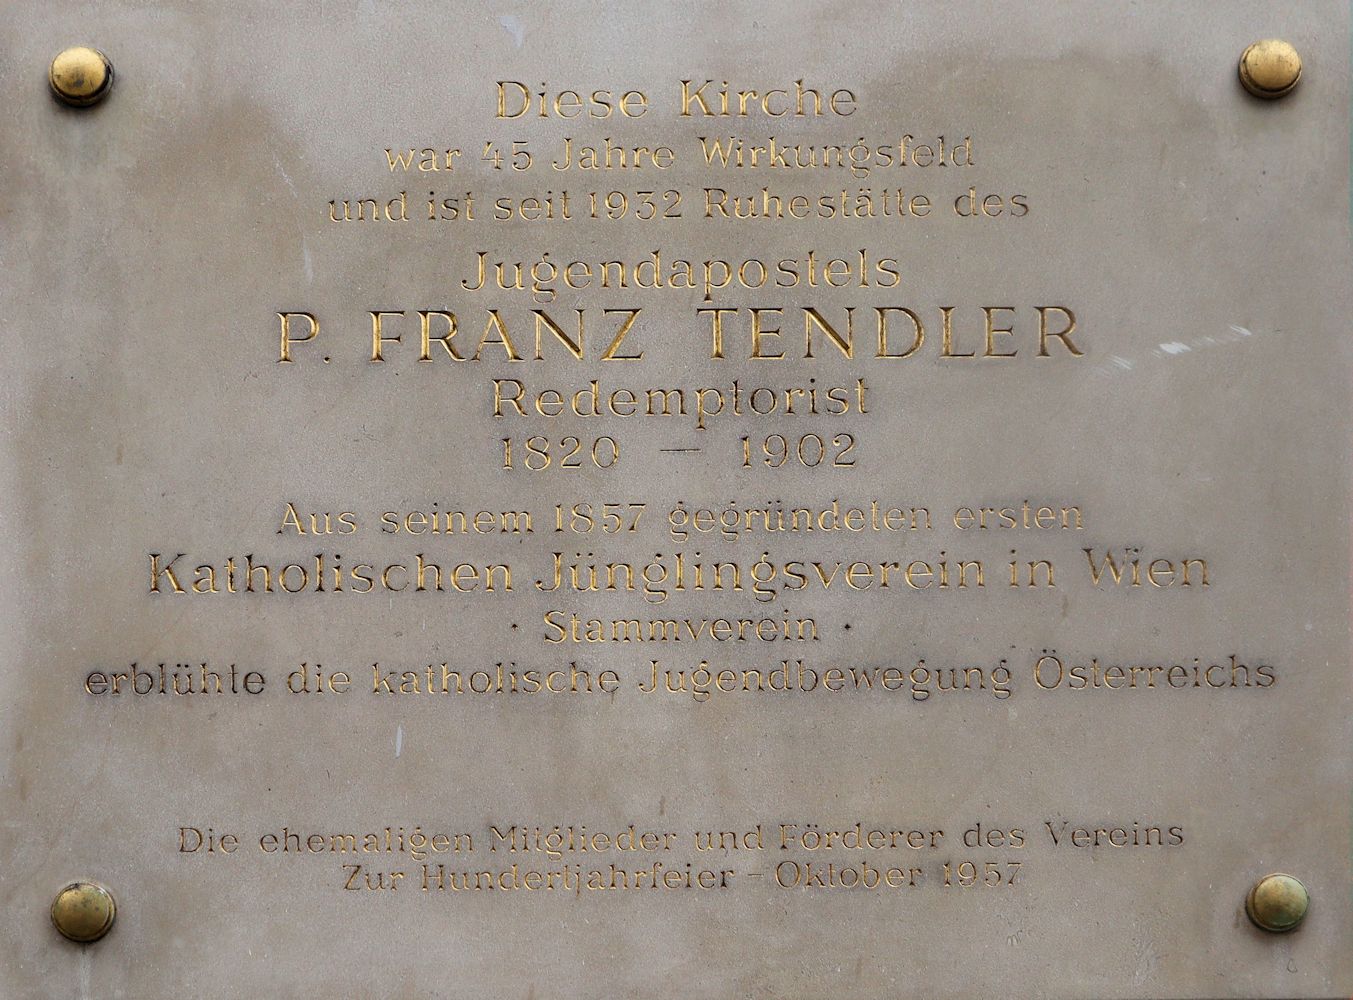 Tafel zum Gedenken an Franz Tendler an der Kirche Santa Maria de Mercede in Wien